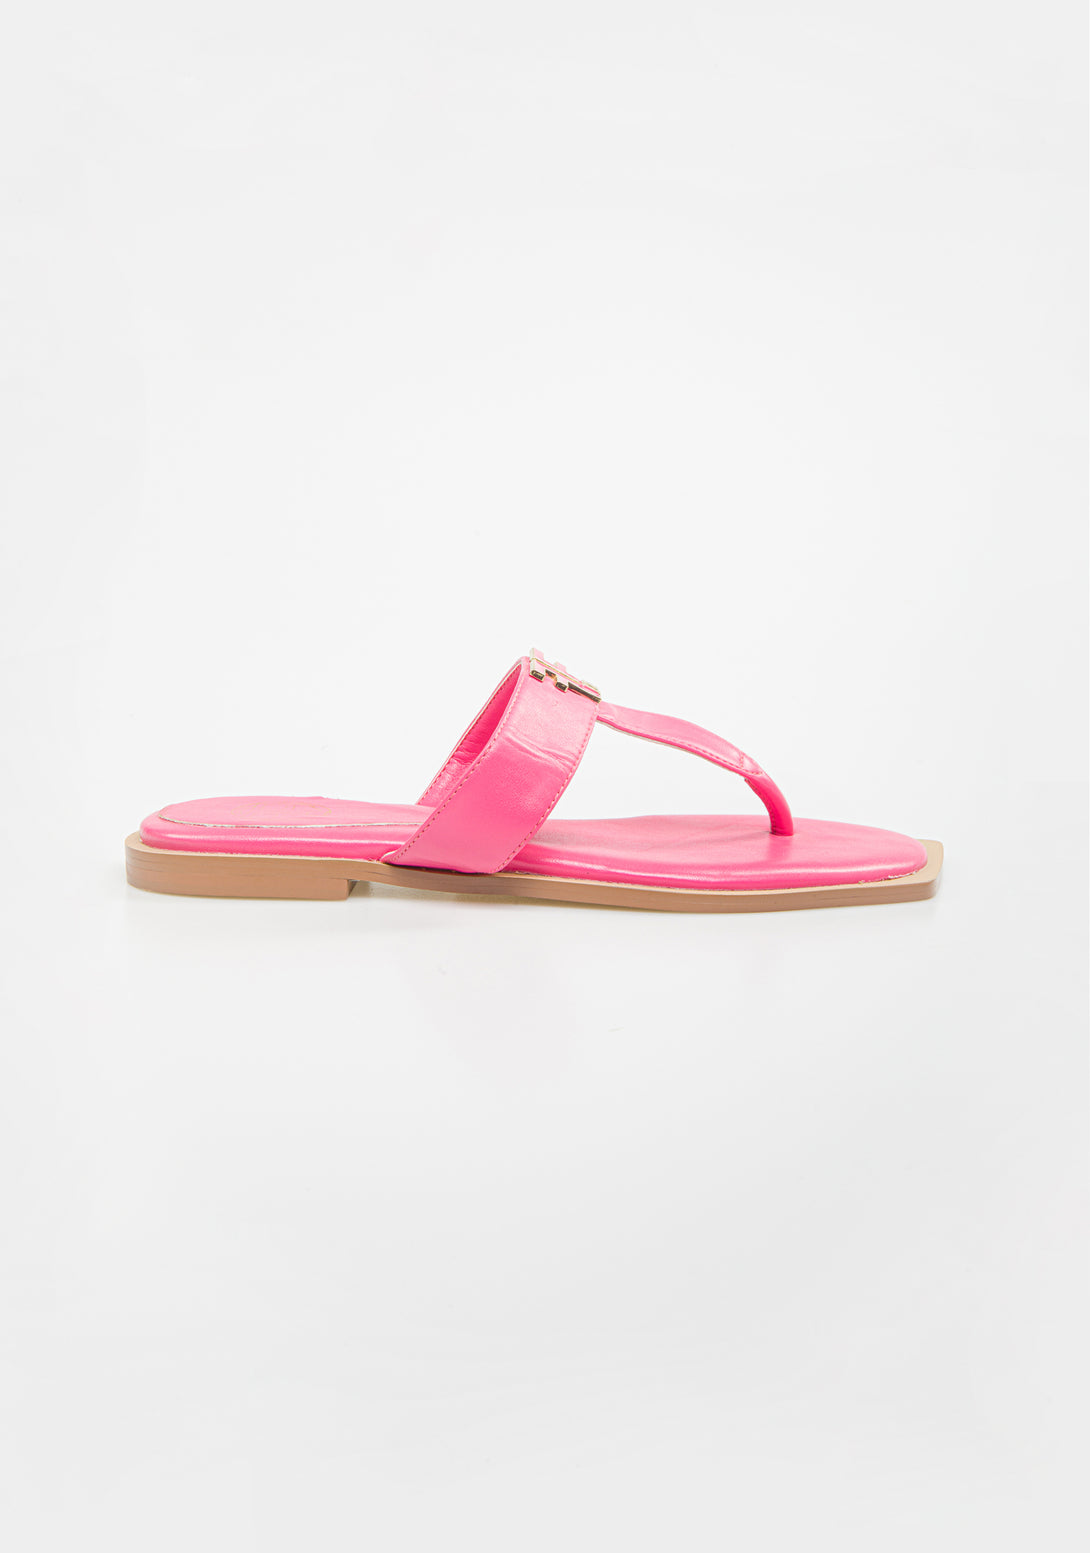 Low flip-flop sandals